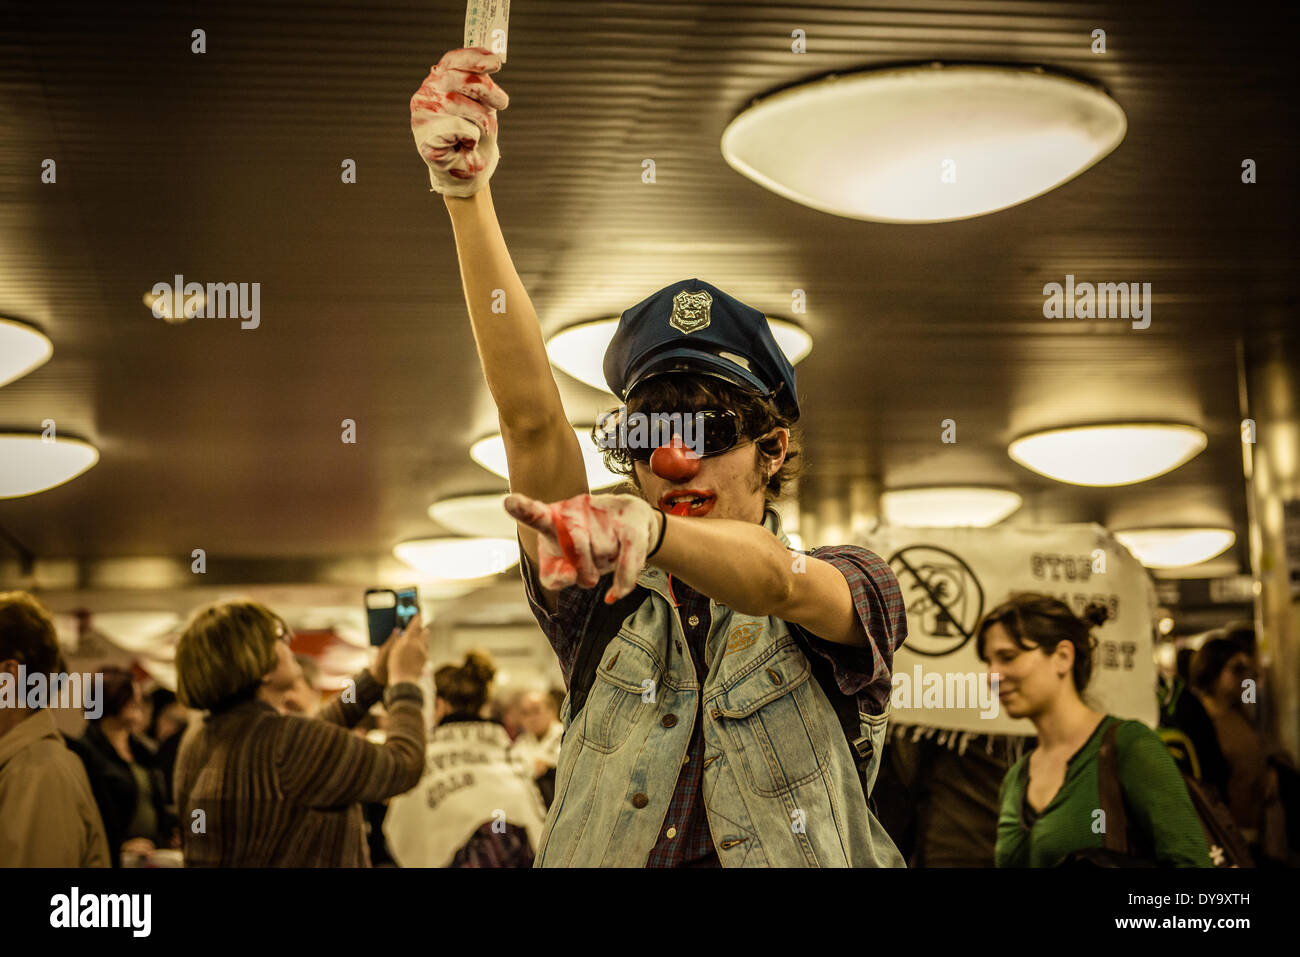 Barcelone, Espagne. 10 avril 2014 : Un militant avec un nez de clowns et chapeau de police est titulaire d'un ticket de métro au cours d'une manifestation contre le faux billet pour les transports publics de Barcelone : Crédit matthi/Alamy Live News Banque D'Images